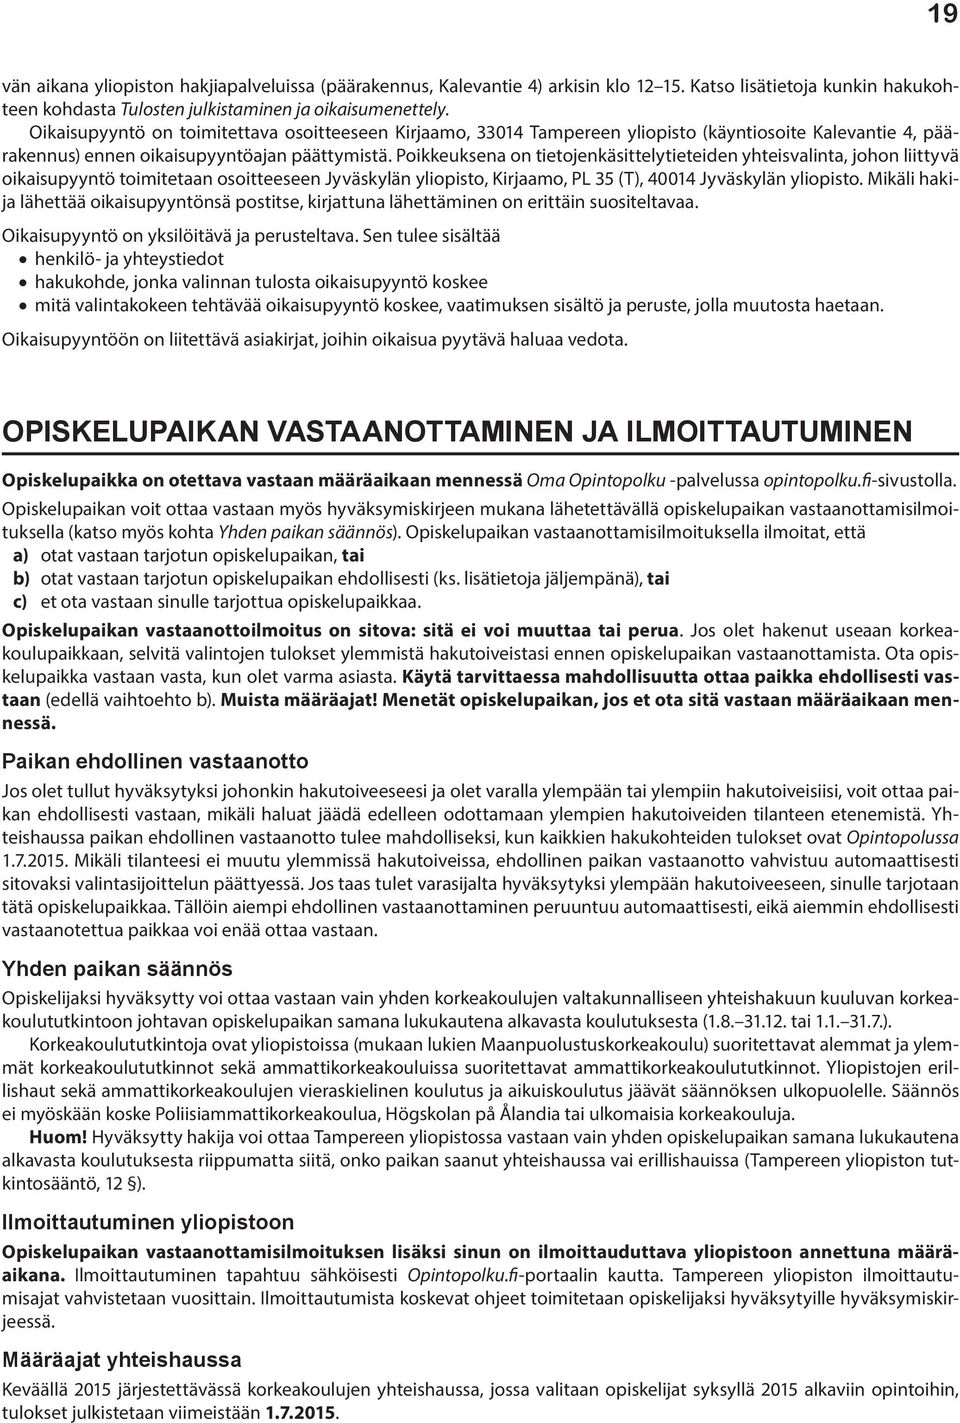 Poikkeuksena on tietojenkäsittelytieteiden yhteisvalinta, johon liittyvä oikaisupyyntö toimitetaan osoitteeseen Jyväskylän yliopisto, Kirjaamo, PL 35 (T), 40014 Jyväskylän yliopisto.